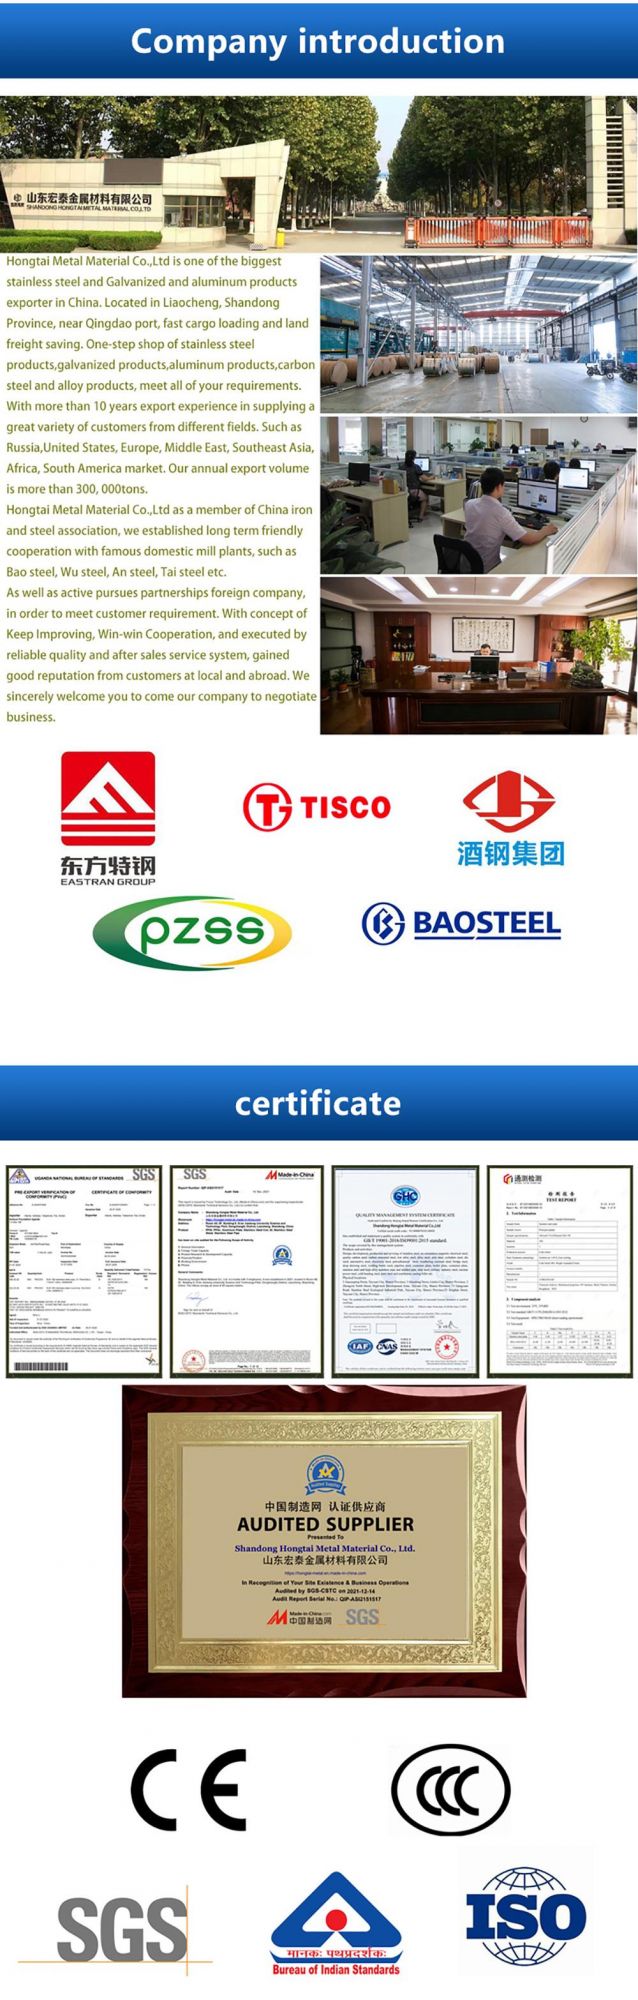 SGS Certificate Steel Plain Sheet 321 316L 310S 2520 2205 2507 1.4529 904L C276 430 420 410 410s Stainless Steel Coil/Steel Strip